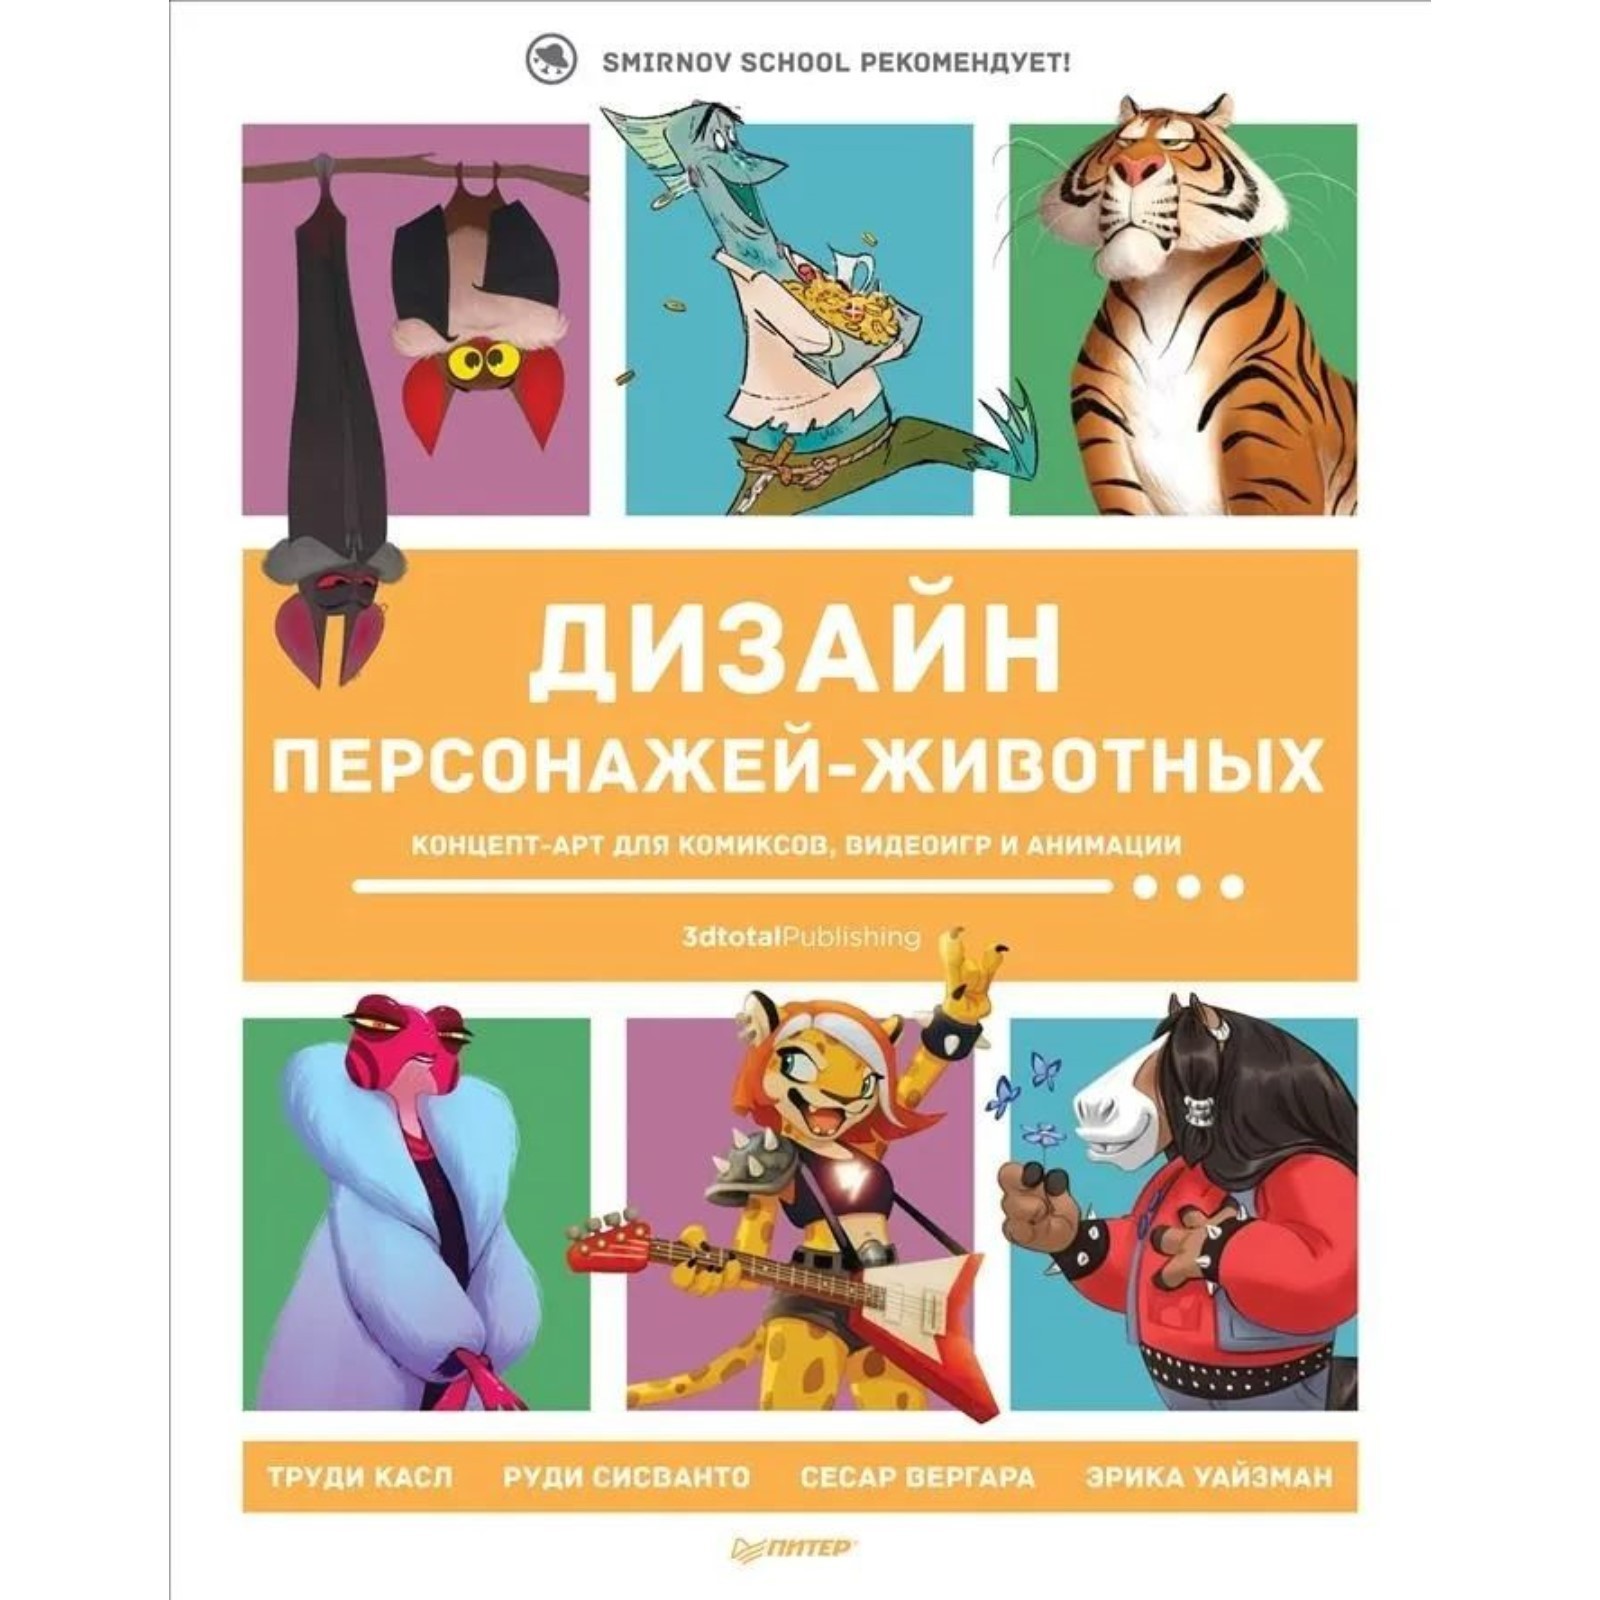 Дизайн персонажей. Концепт-арт для комиксов, видеоигр и анимации (9239206) - Купить по цене от 2 387.00 руб.